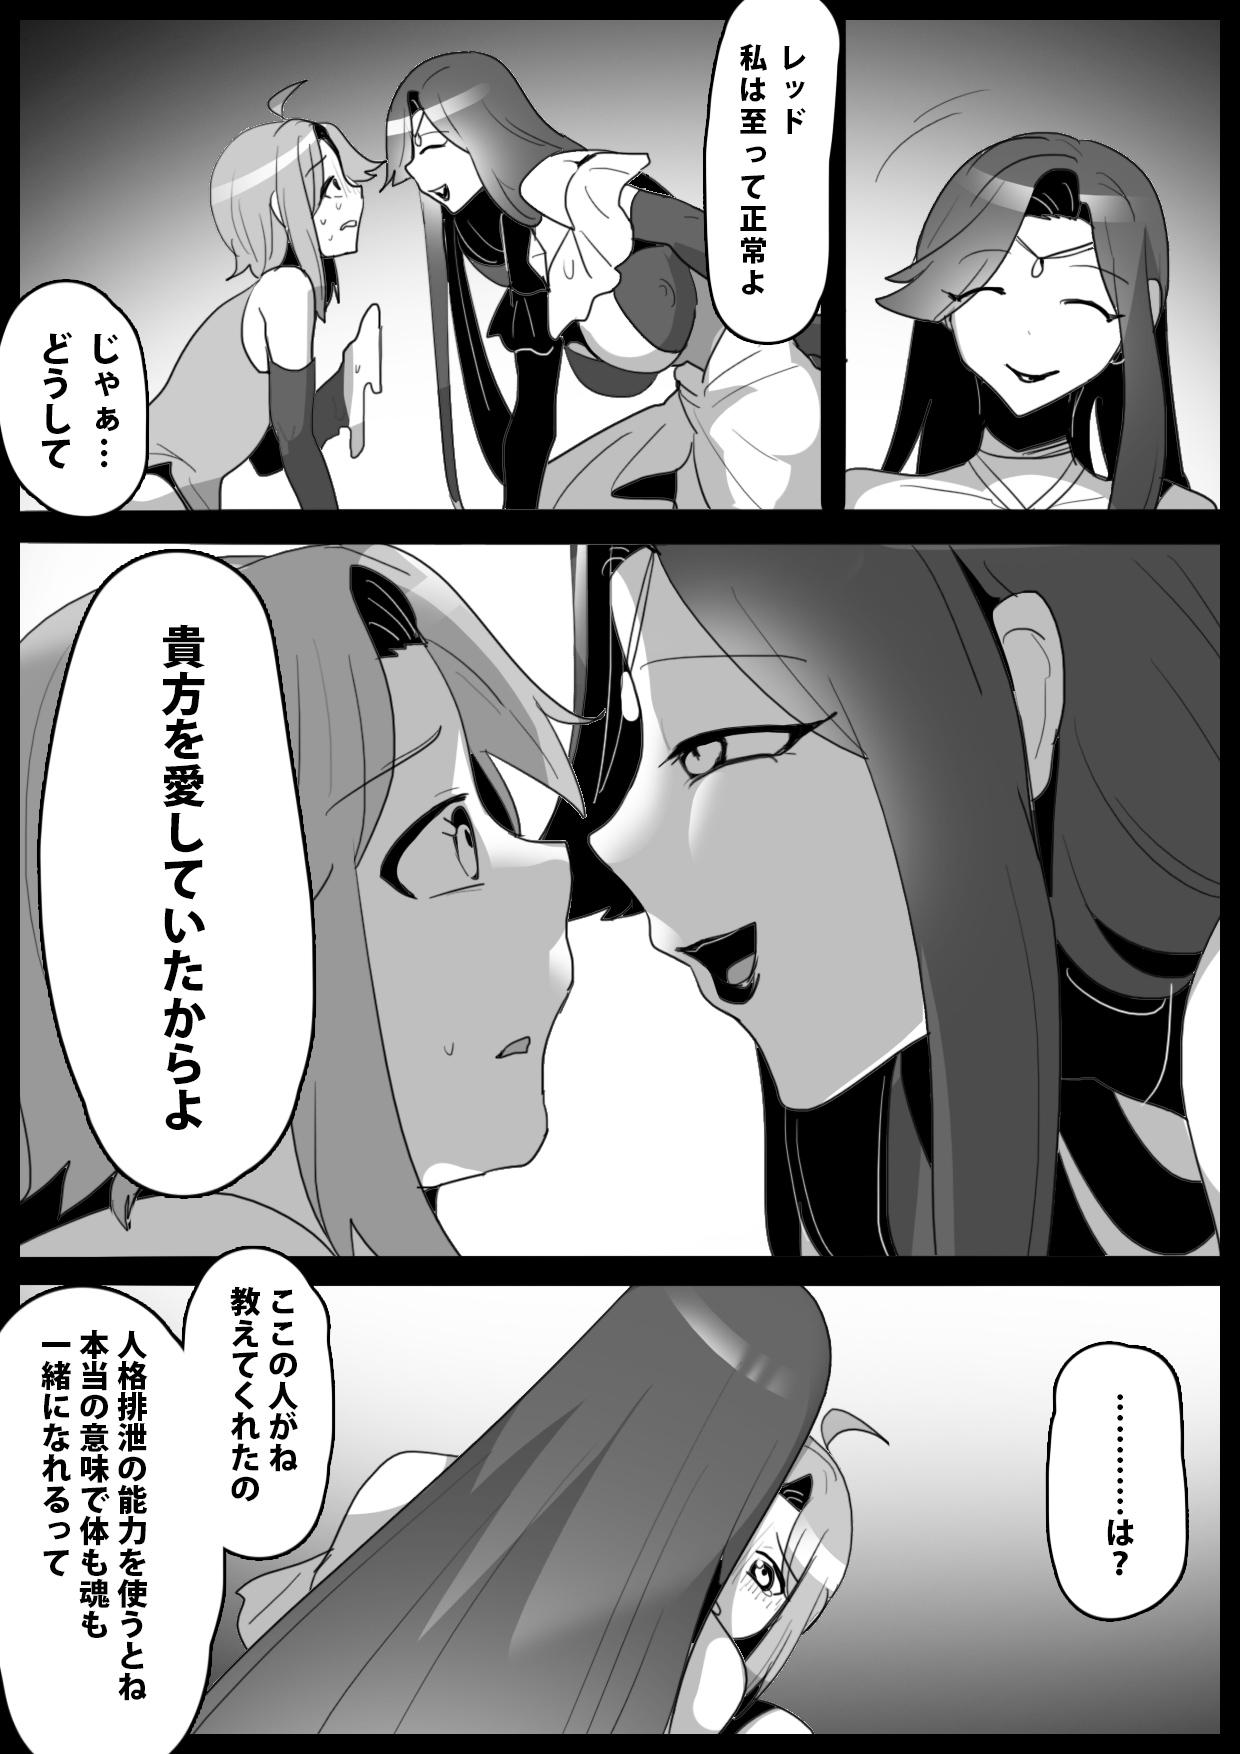 Blackcock mahō senshi, shinjiteita nakama ni uragirare, kyūshūsareru hanashi - Original Humiliation - Page 4